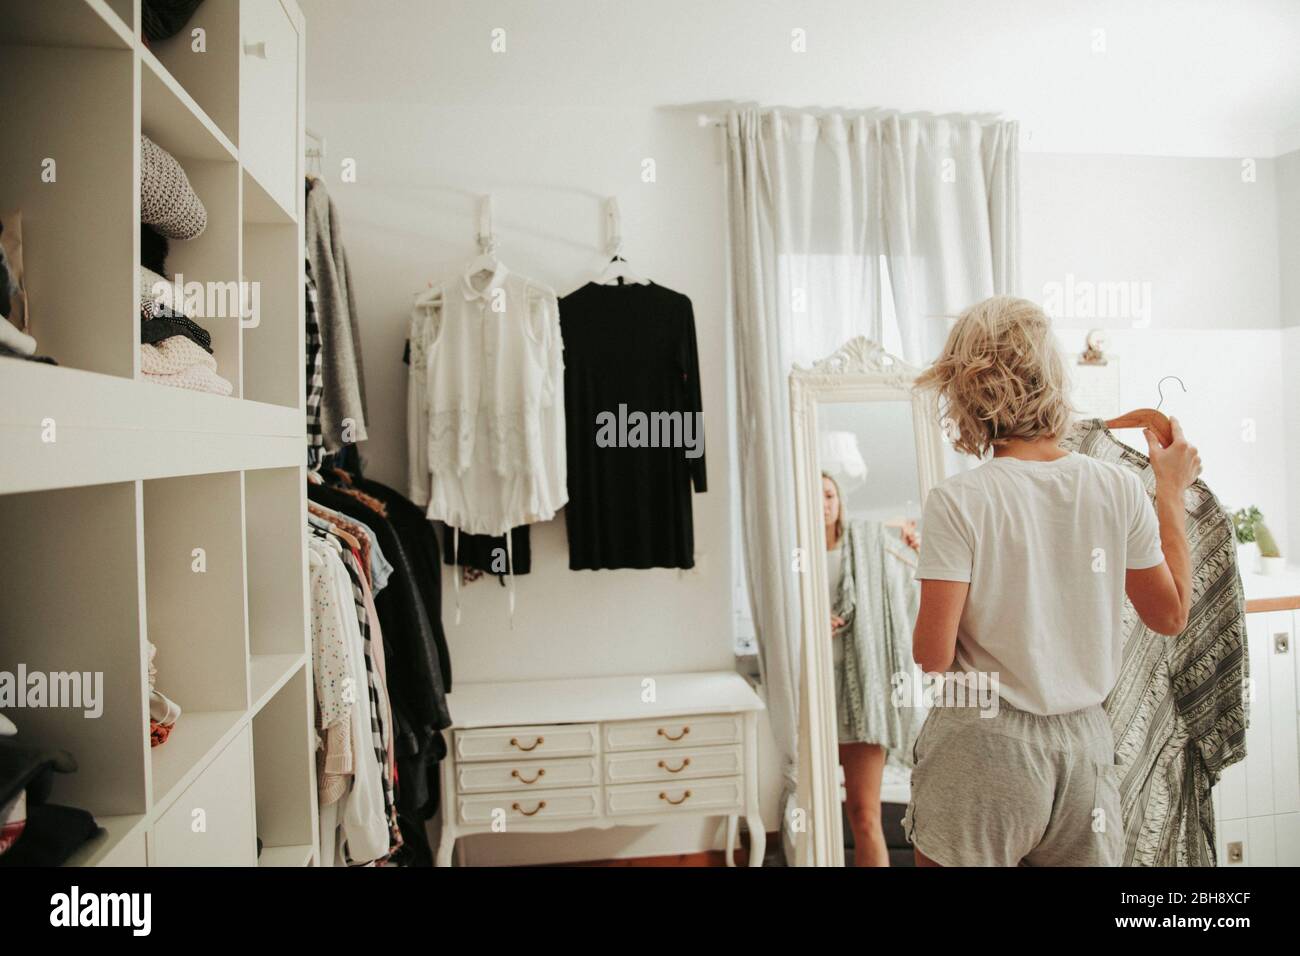 Frau steht vor dem Spiegel, kleidet sich an, unentschlossen Foto Stock